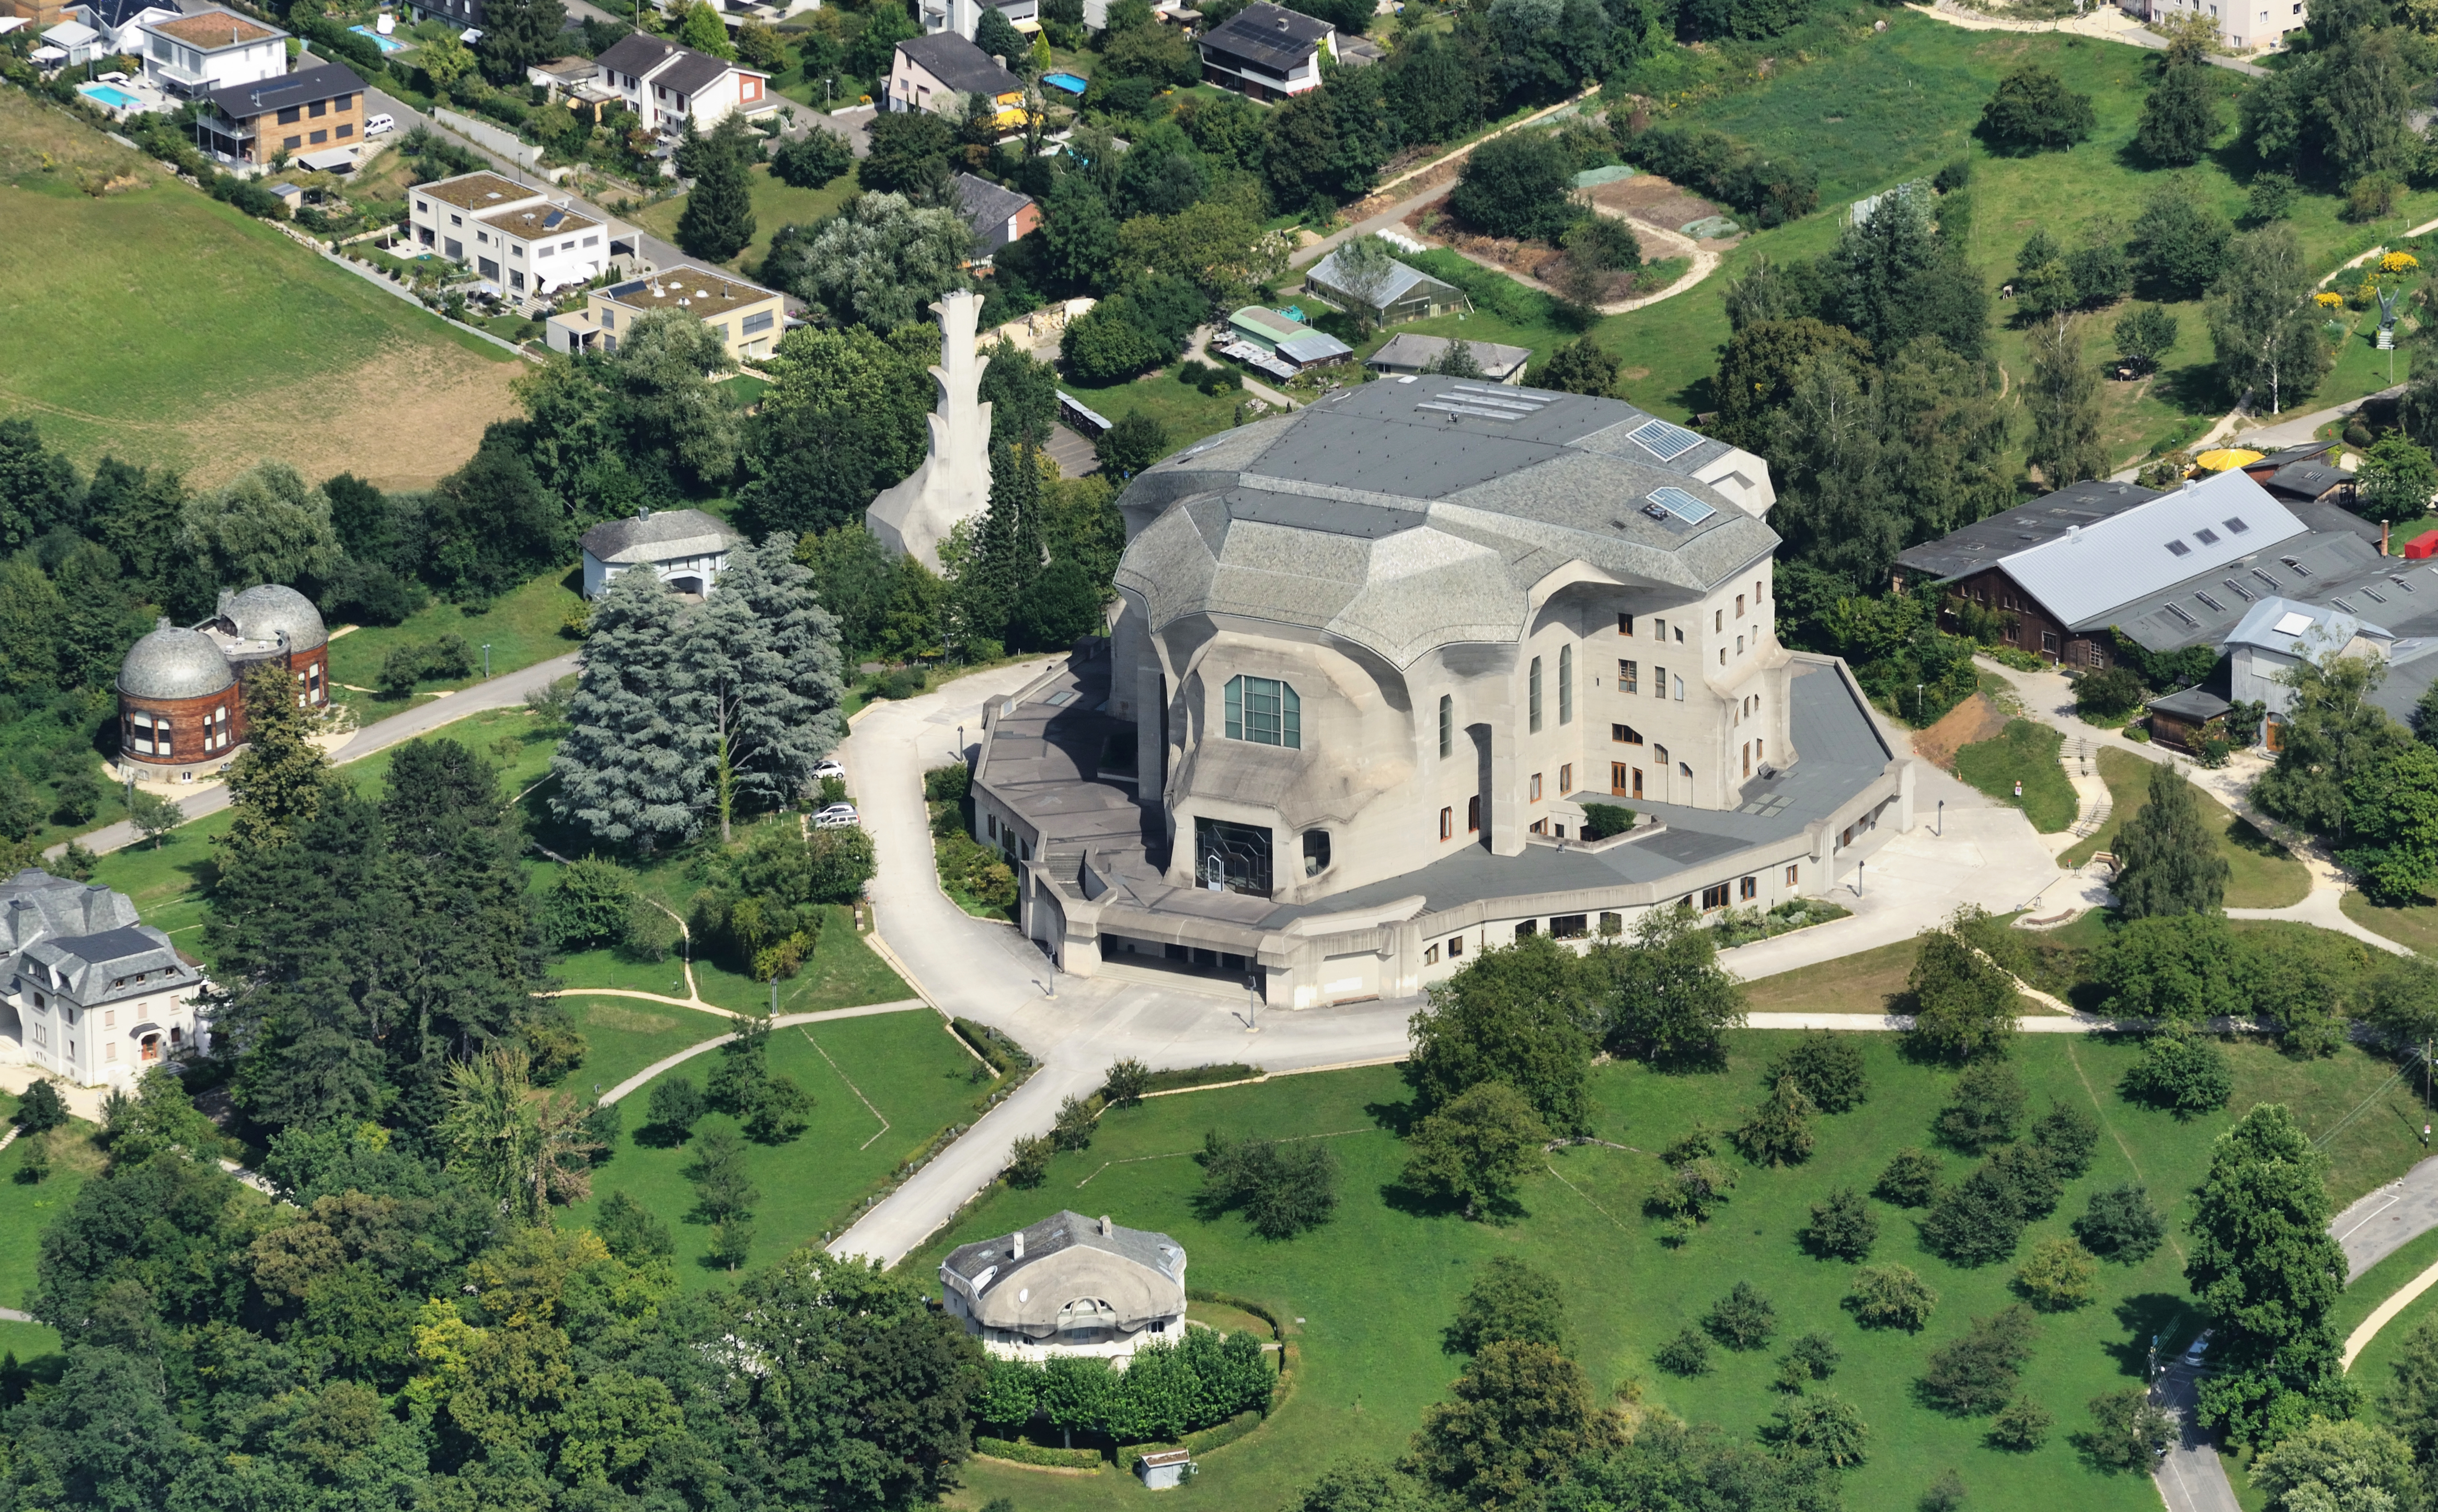 Aerial View - Goetheanum2